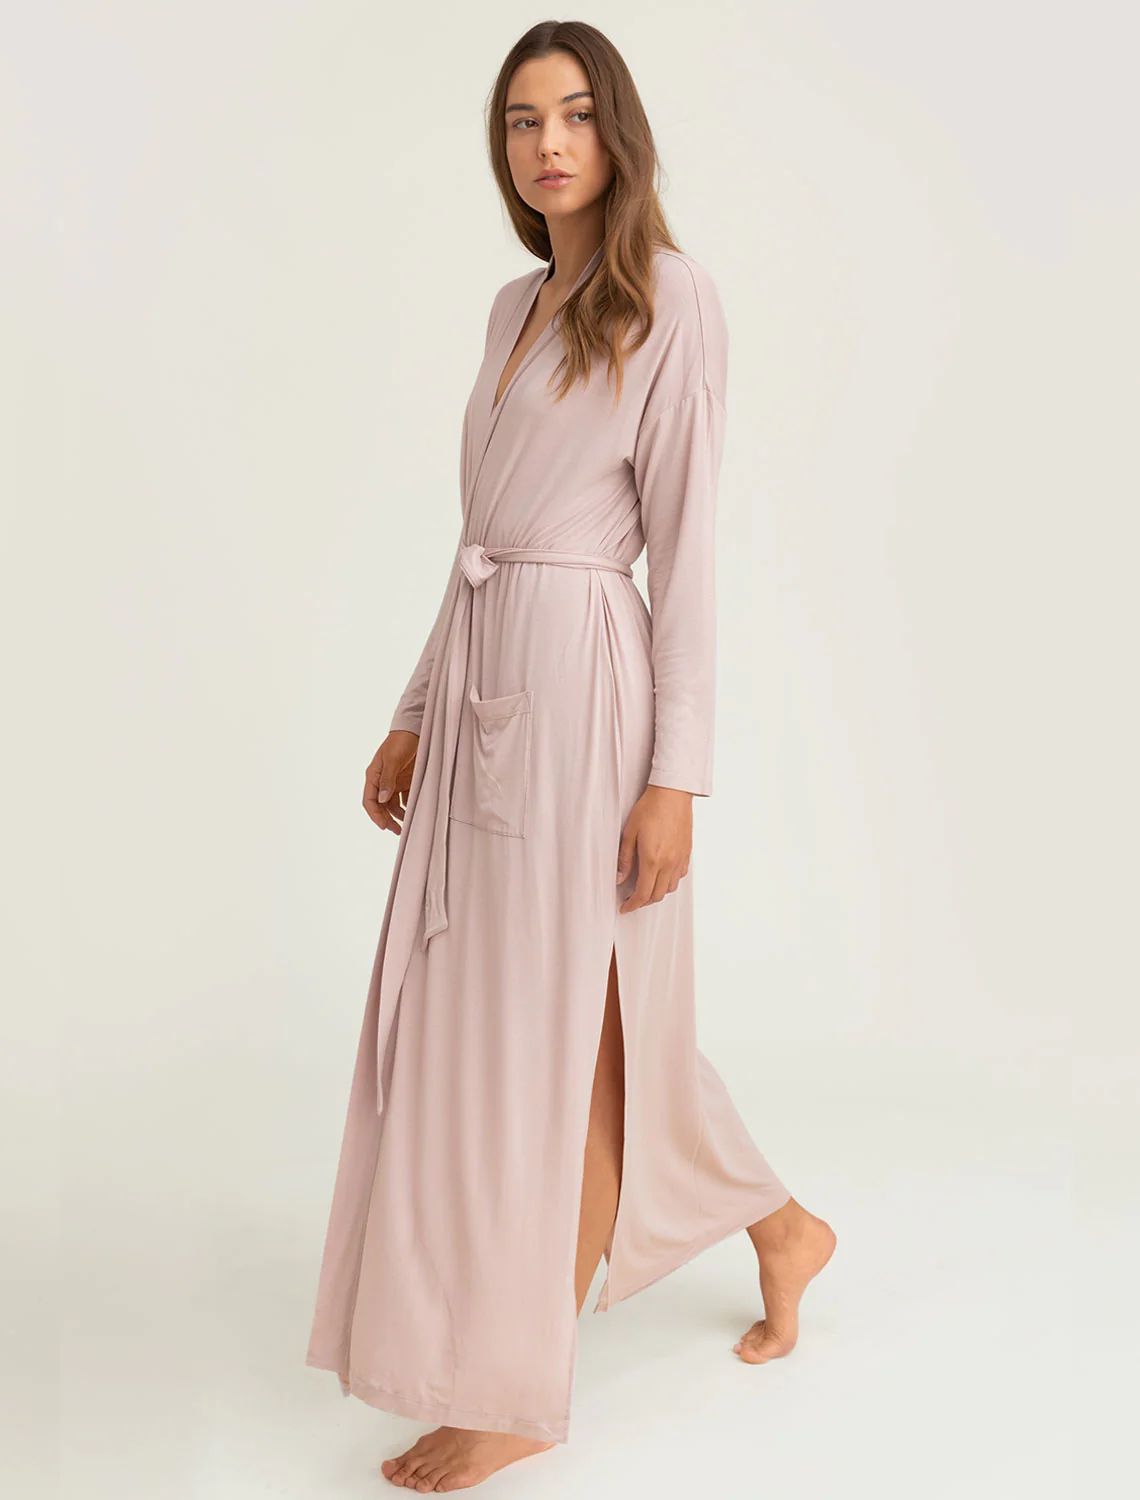 Luxe Milk Jersey® Women's Duster Robe | Barefoot Dreams